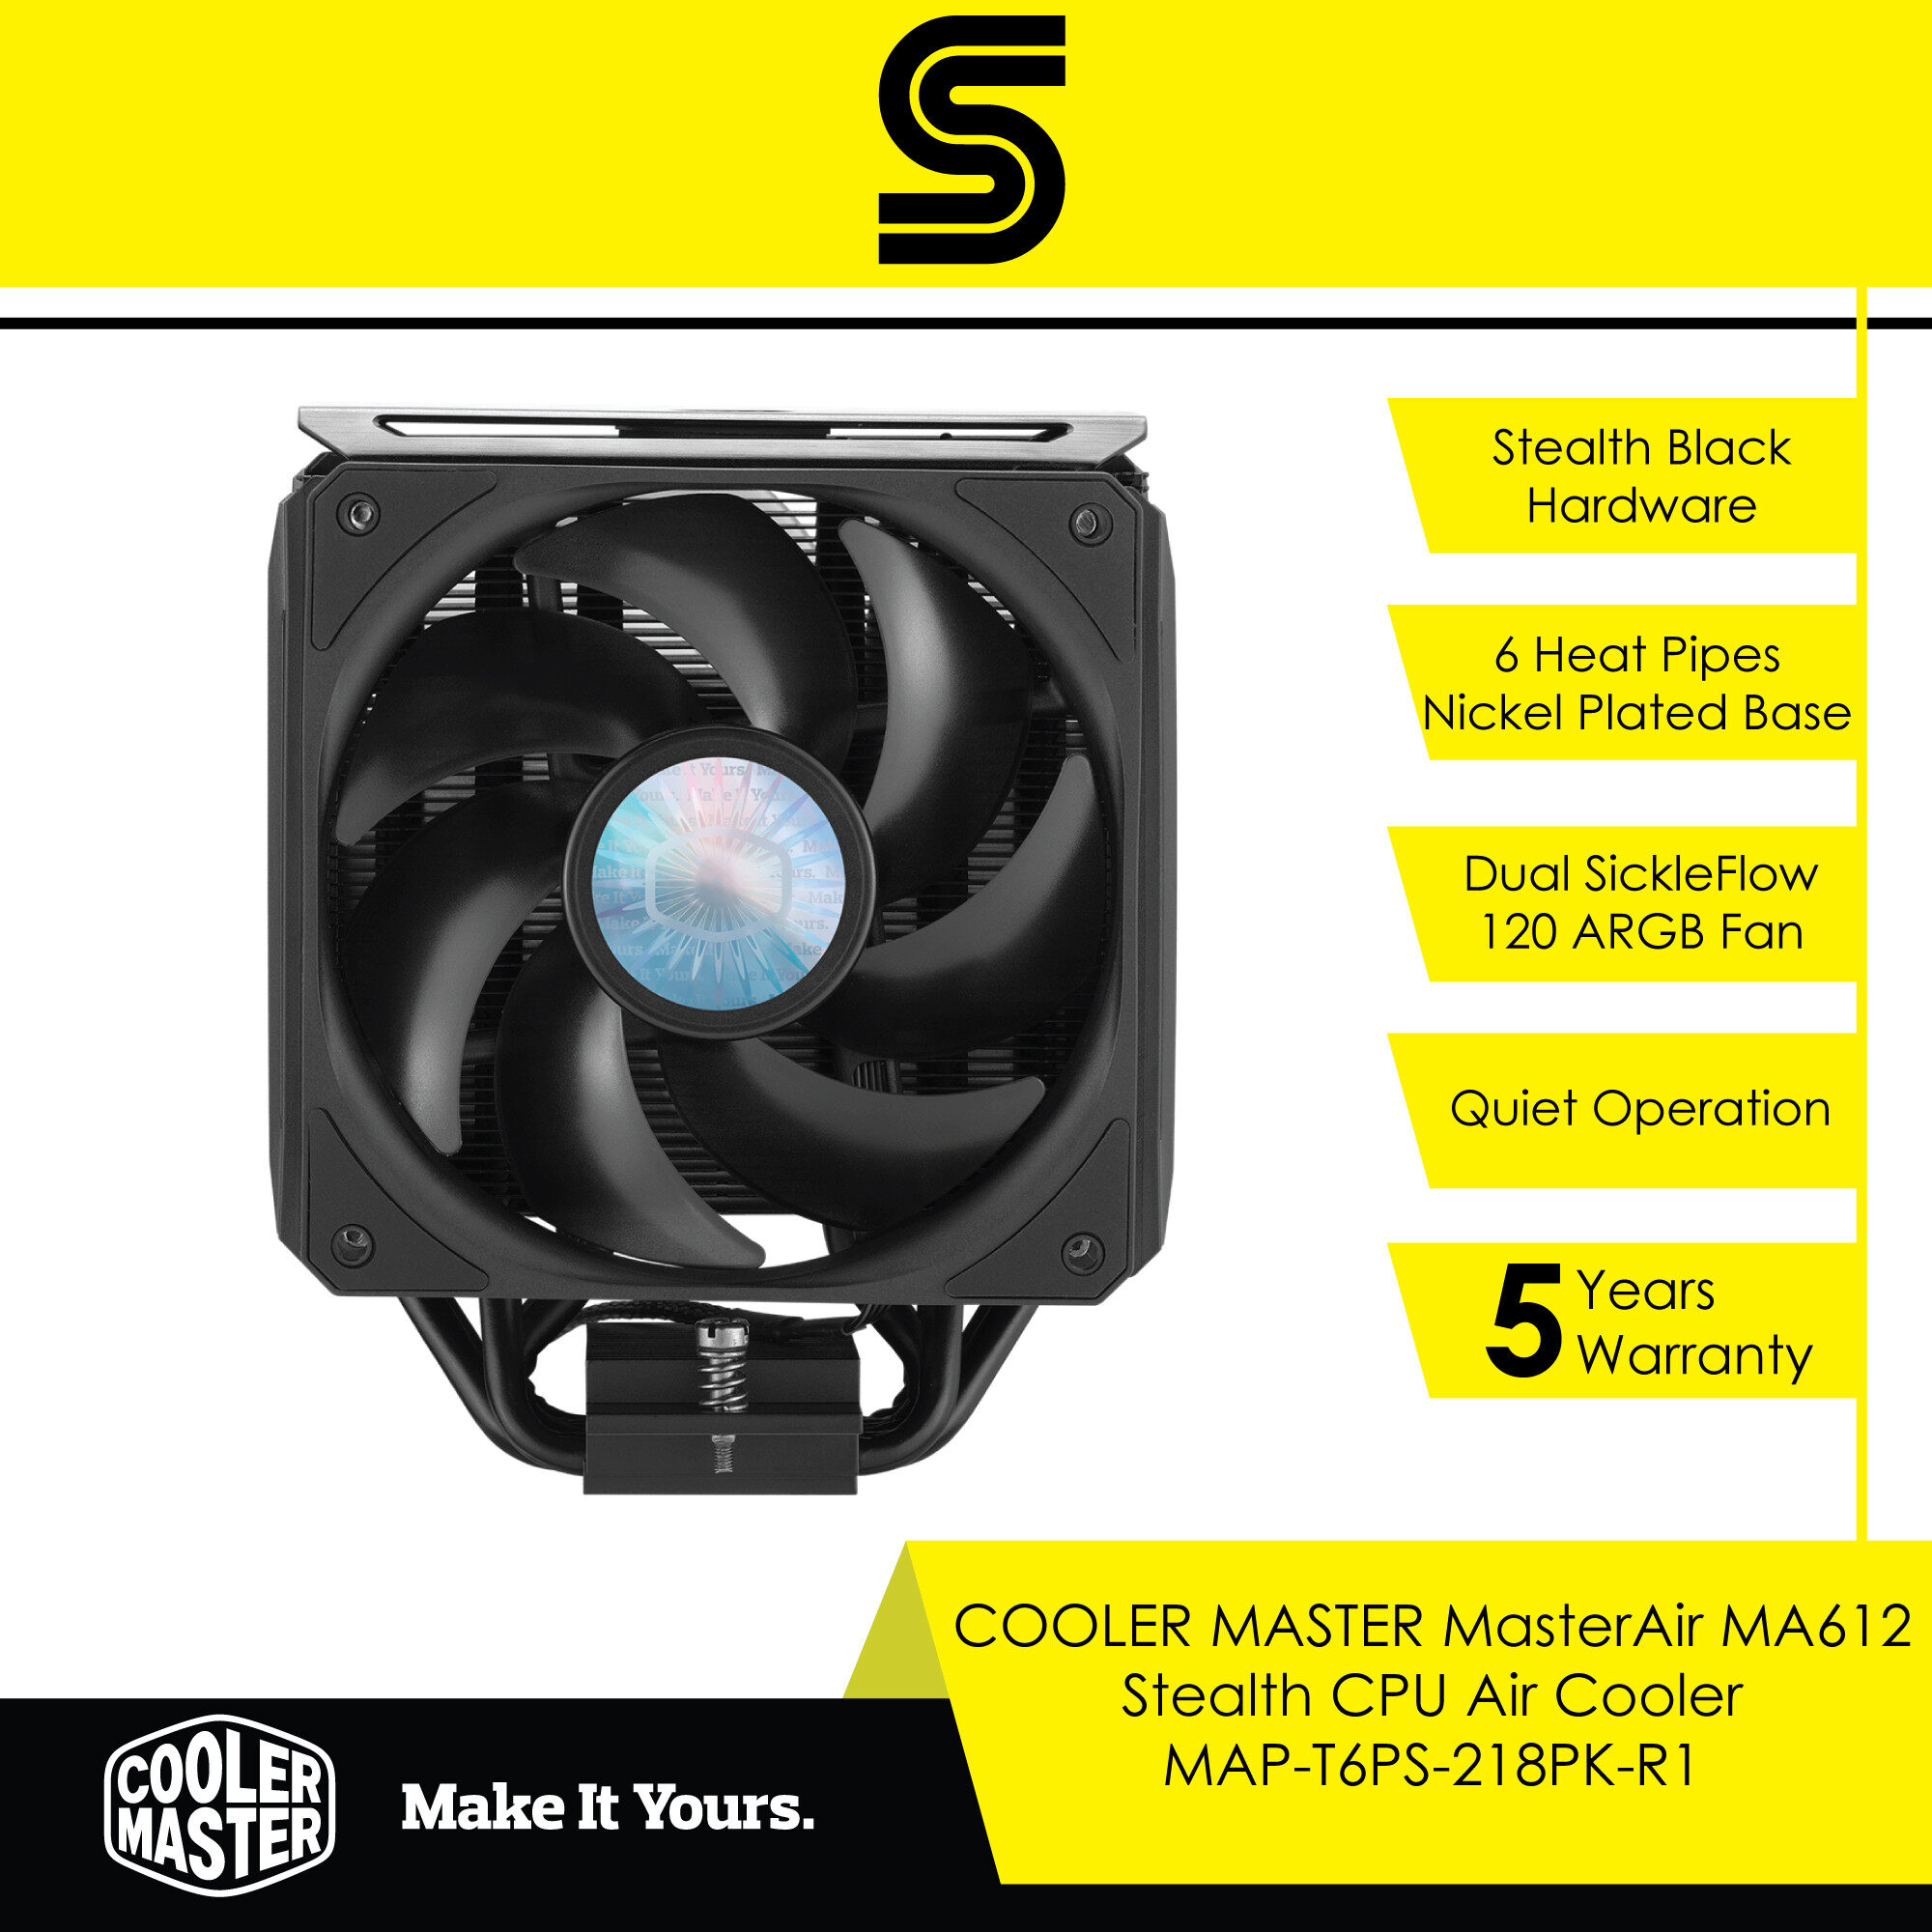 COOLER MASTER MasterAir MA612 Stealth CPU Air Cooler - MAP-T6PS-218PK-R1